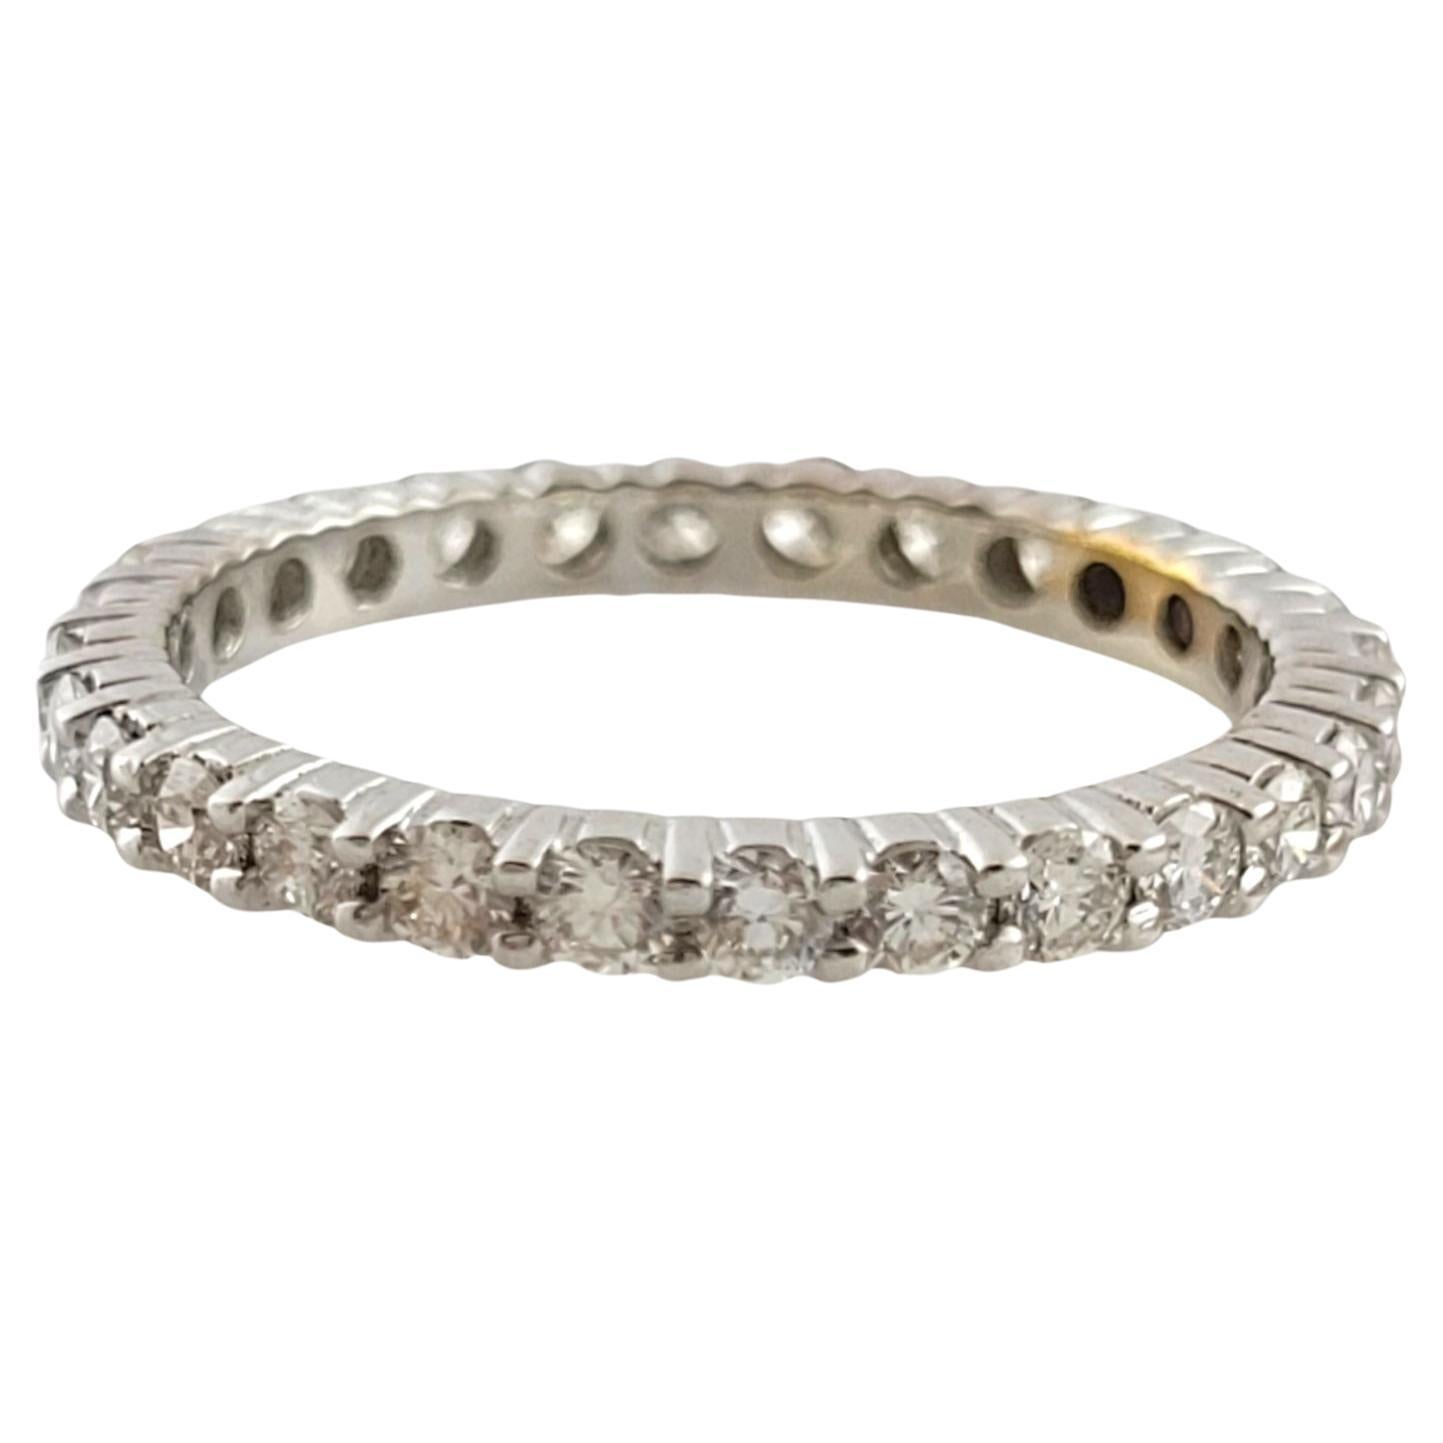 Magnifique bracelet d'éternité en or blanc 14K avec 28 diamants ronds étincelants !

Poids total approximatif des diamants : 1.00 cttw

Clarté du diamant : SI1-I1

Couleur du diamant : G-H

Taille de l'anneau : 6

Queue : 2.1mm

Poids : 1,78 g/ 1,1